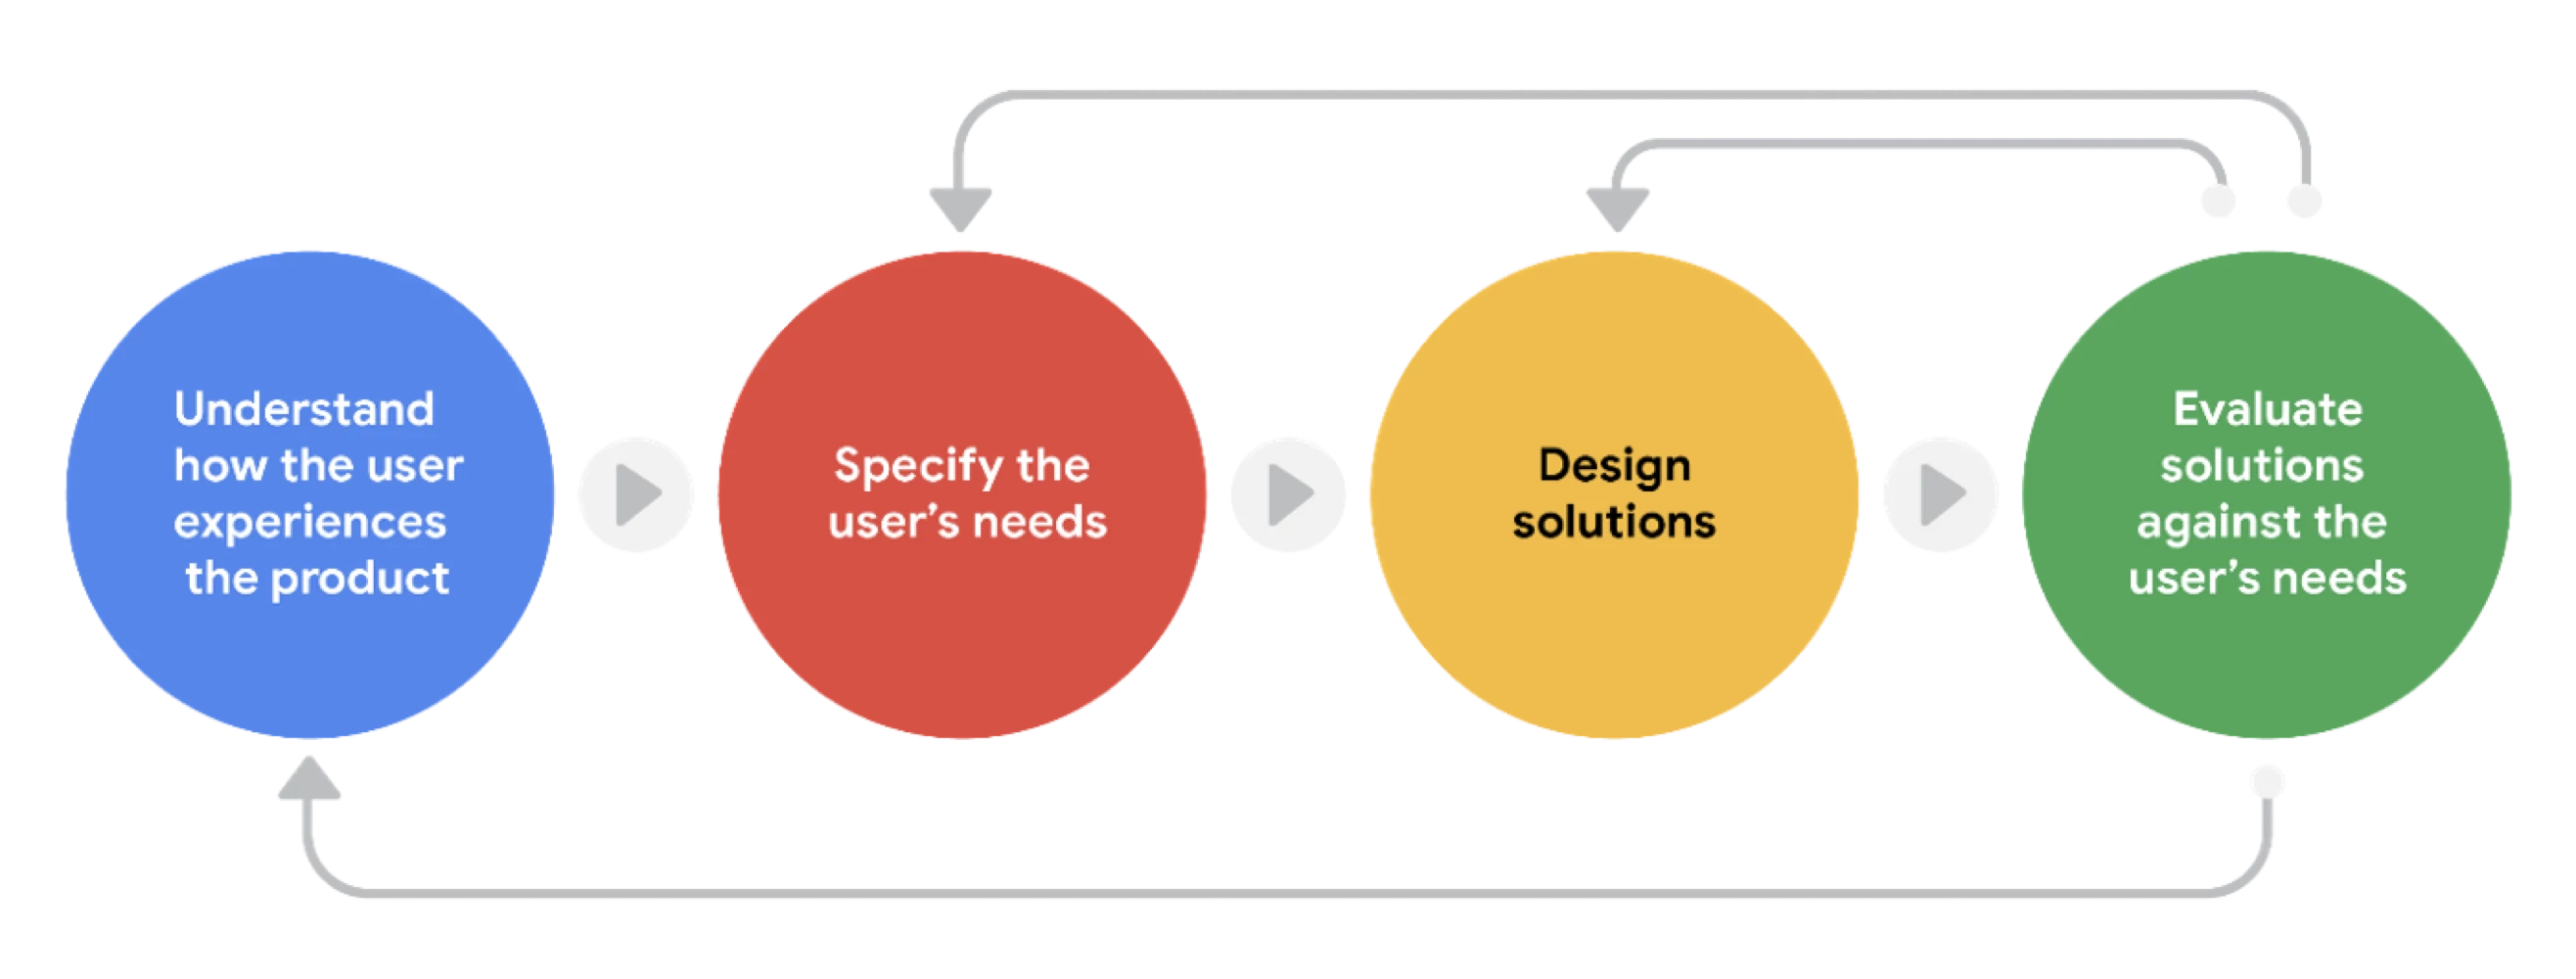 Flow diagram showing the design process